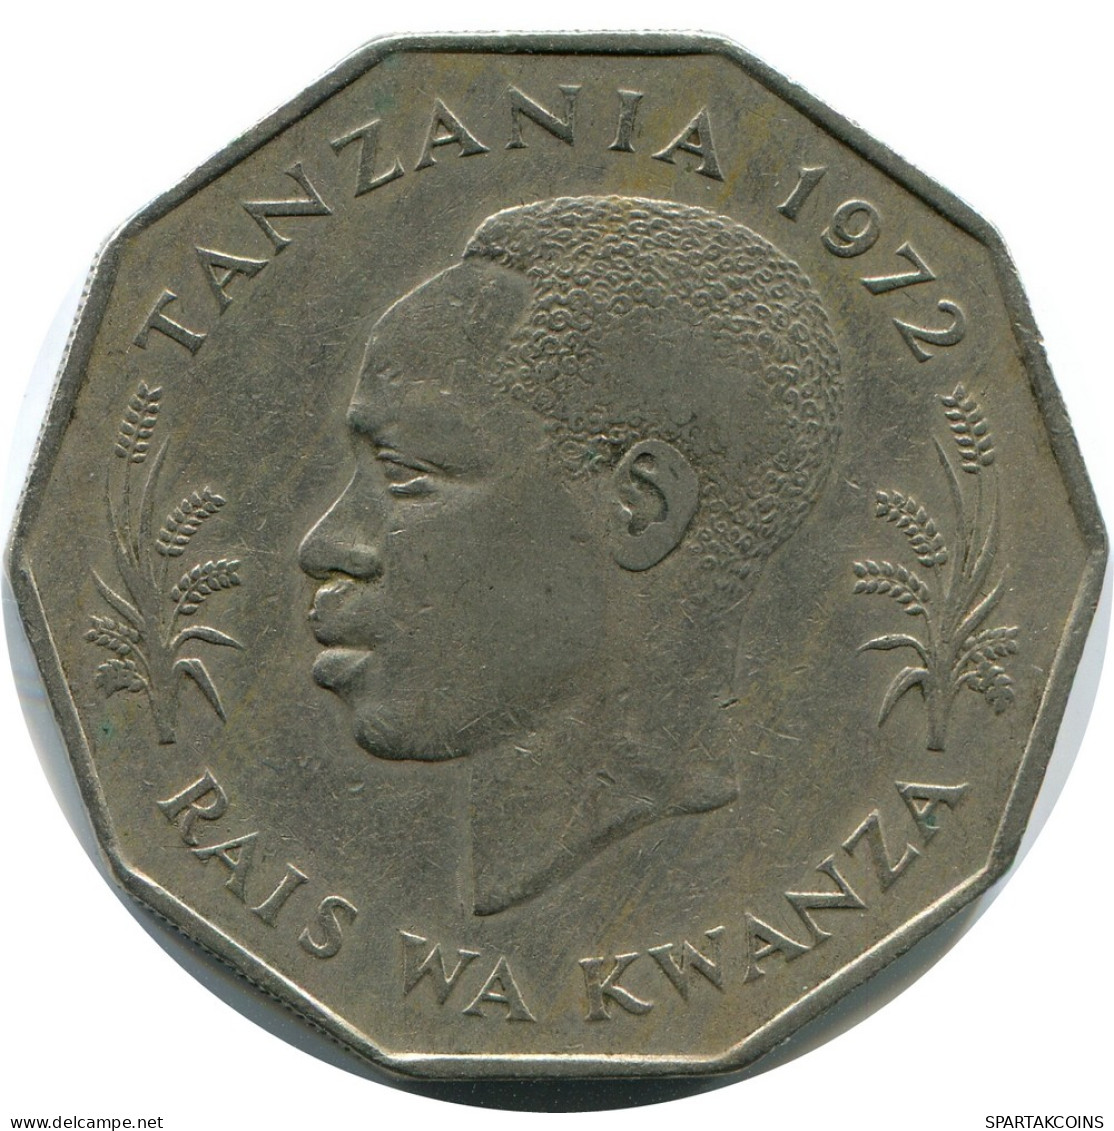 5 SHILINGI 1972 TANZANIA Coin #AZ085.U - Tanzanía